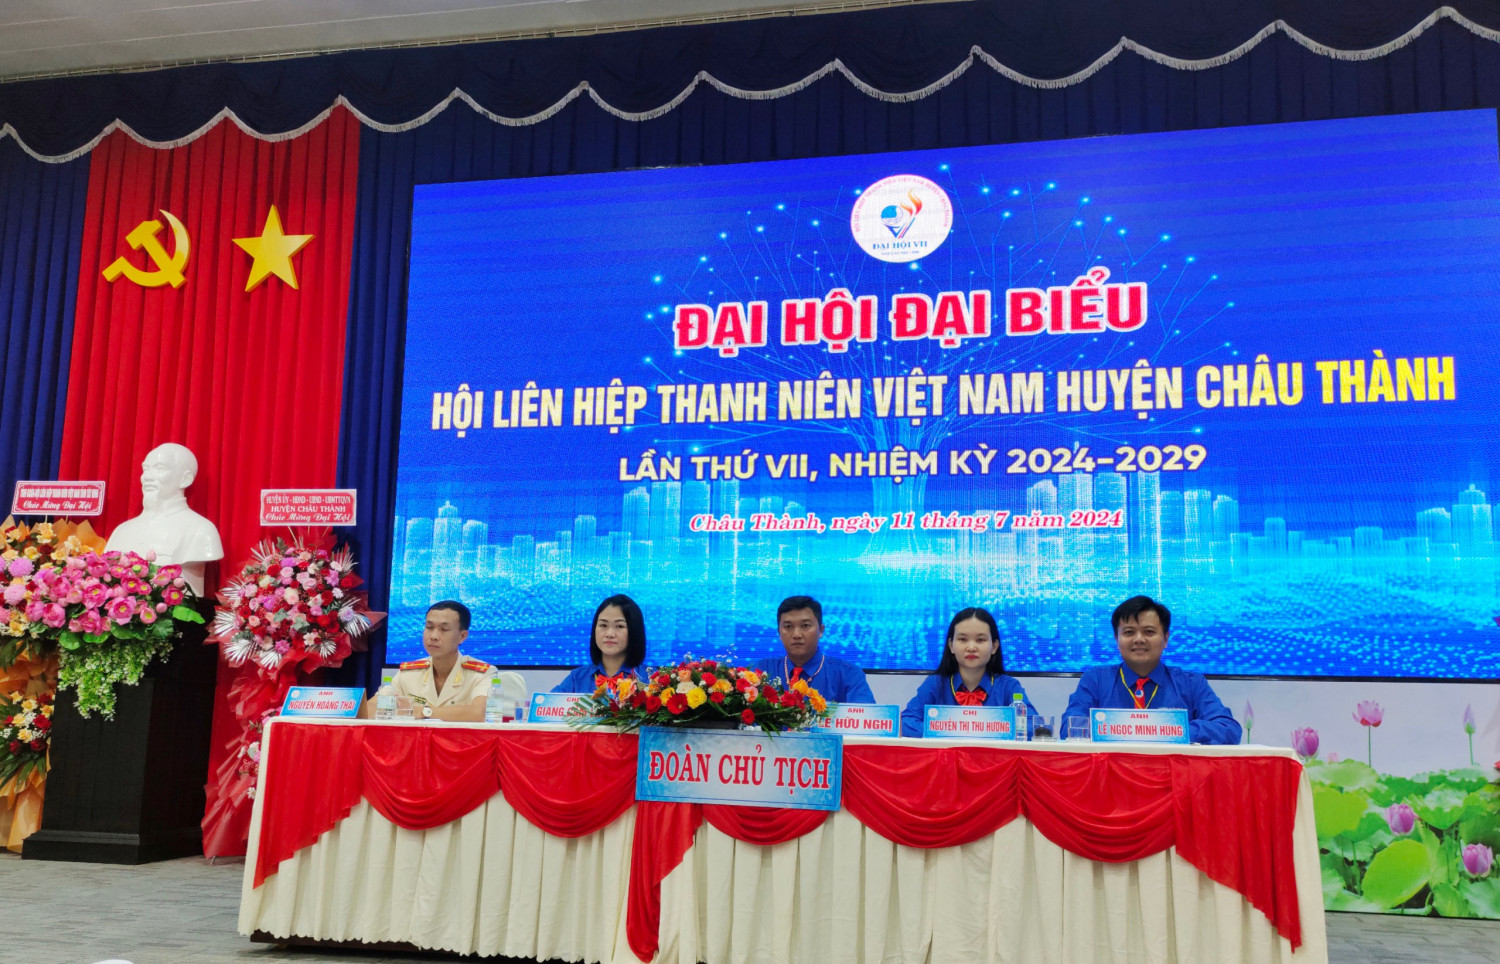 Khai mạc Đại hội đại biểu Hội LHTNVN huyện Châu Thành lần thứ VII